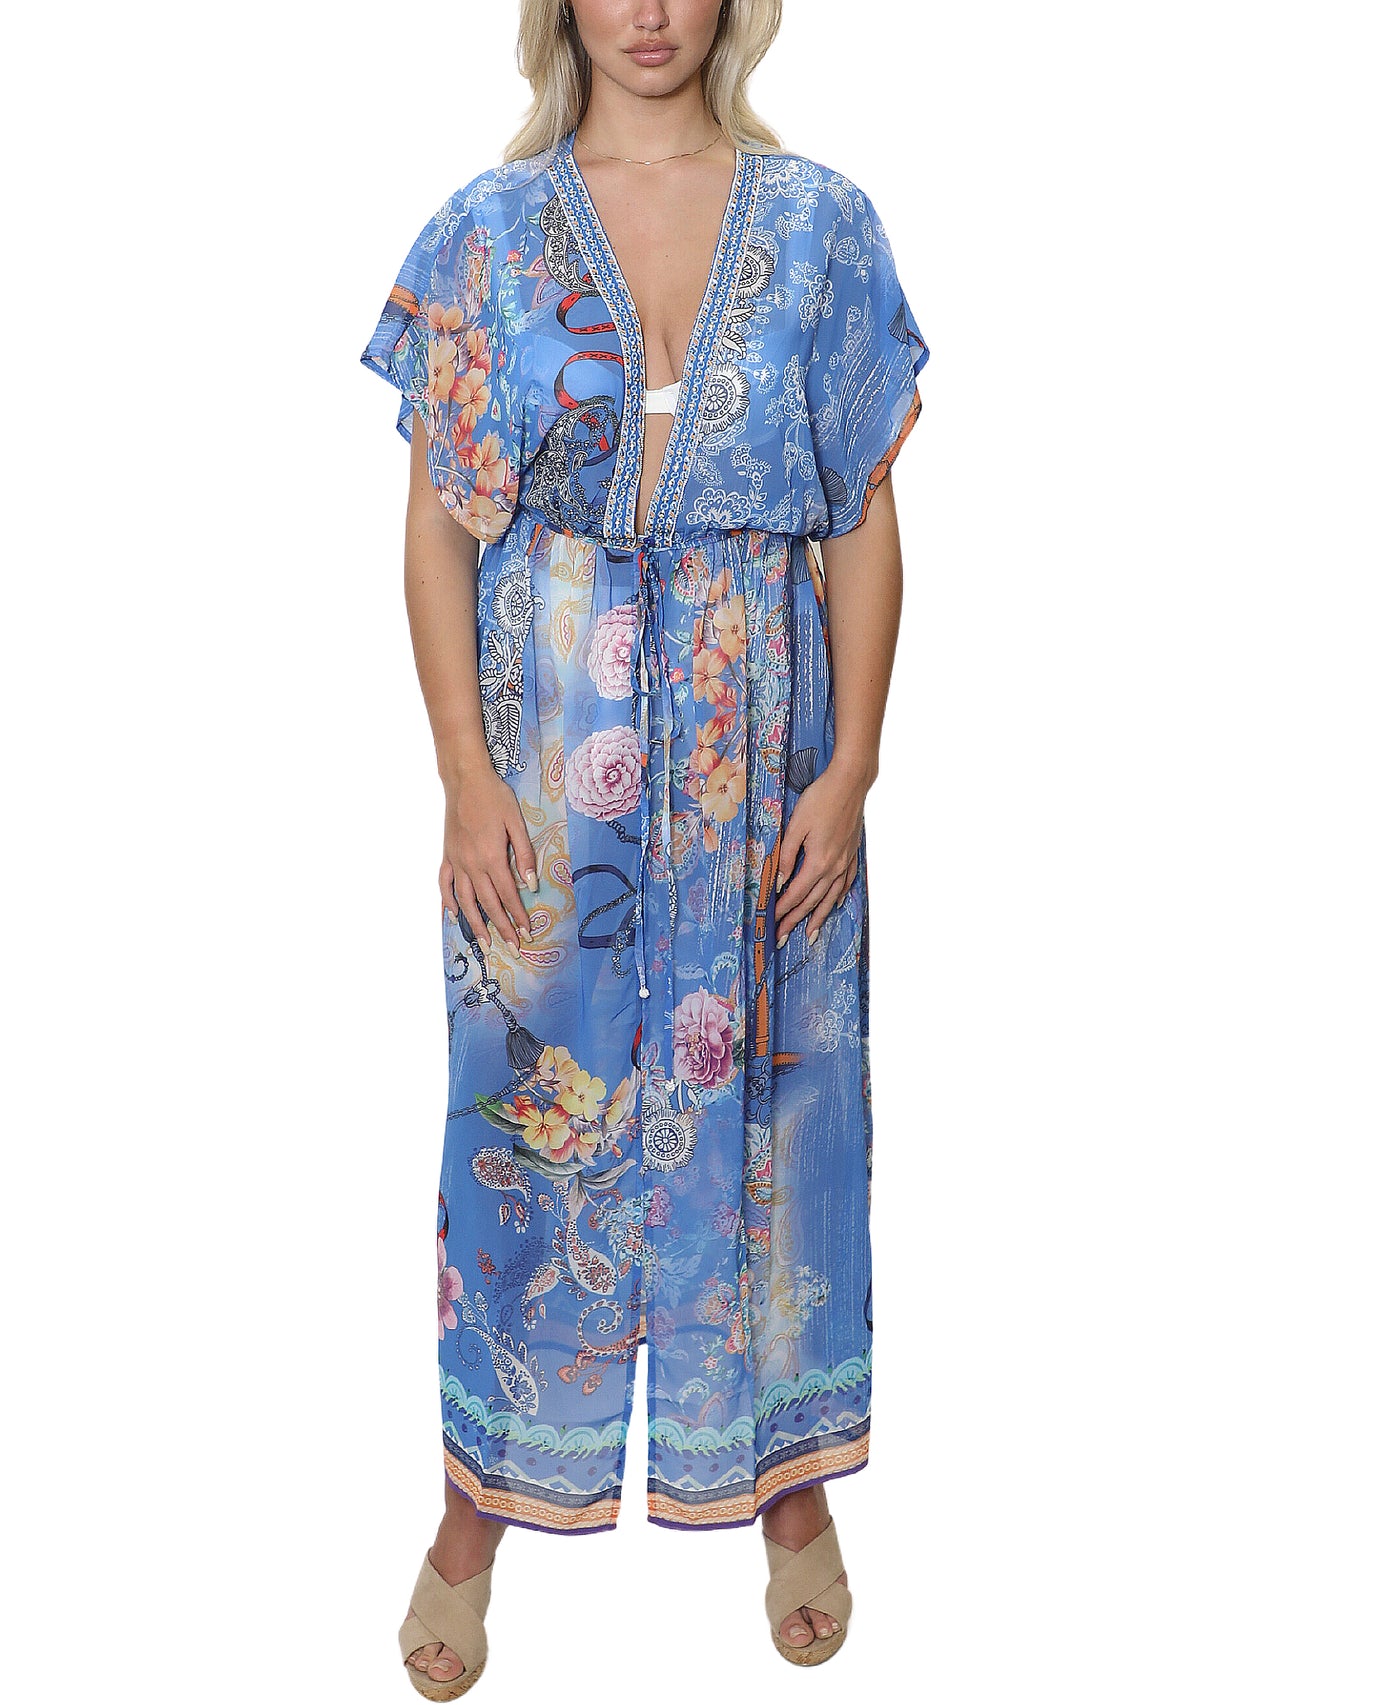 Embellished Kimono Swim Cover-Up image 1